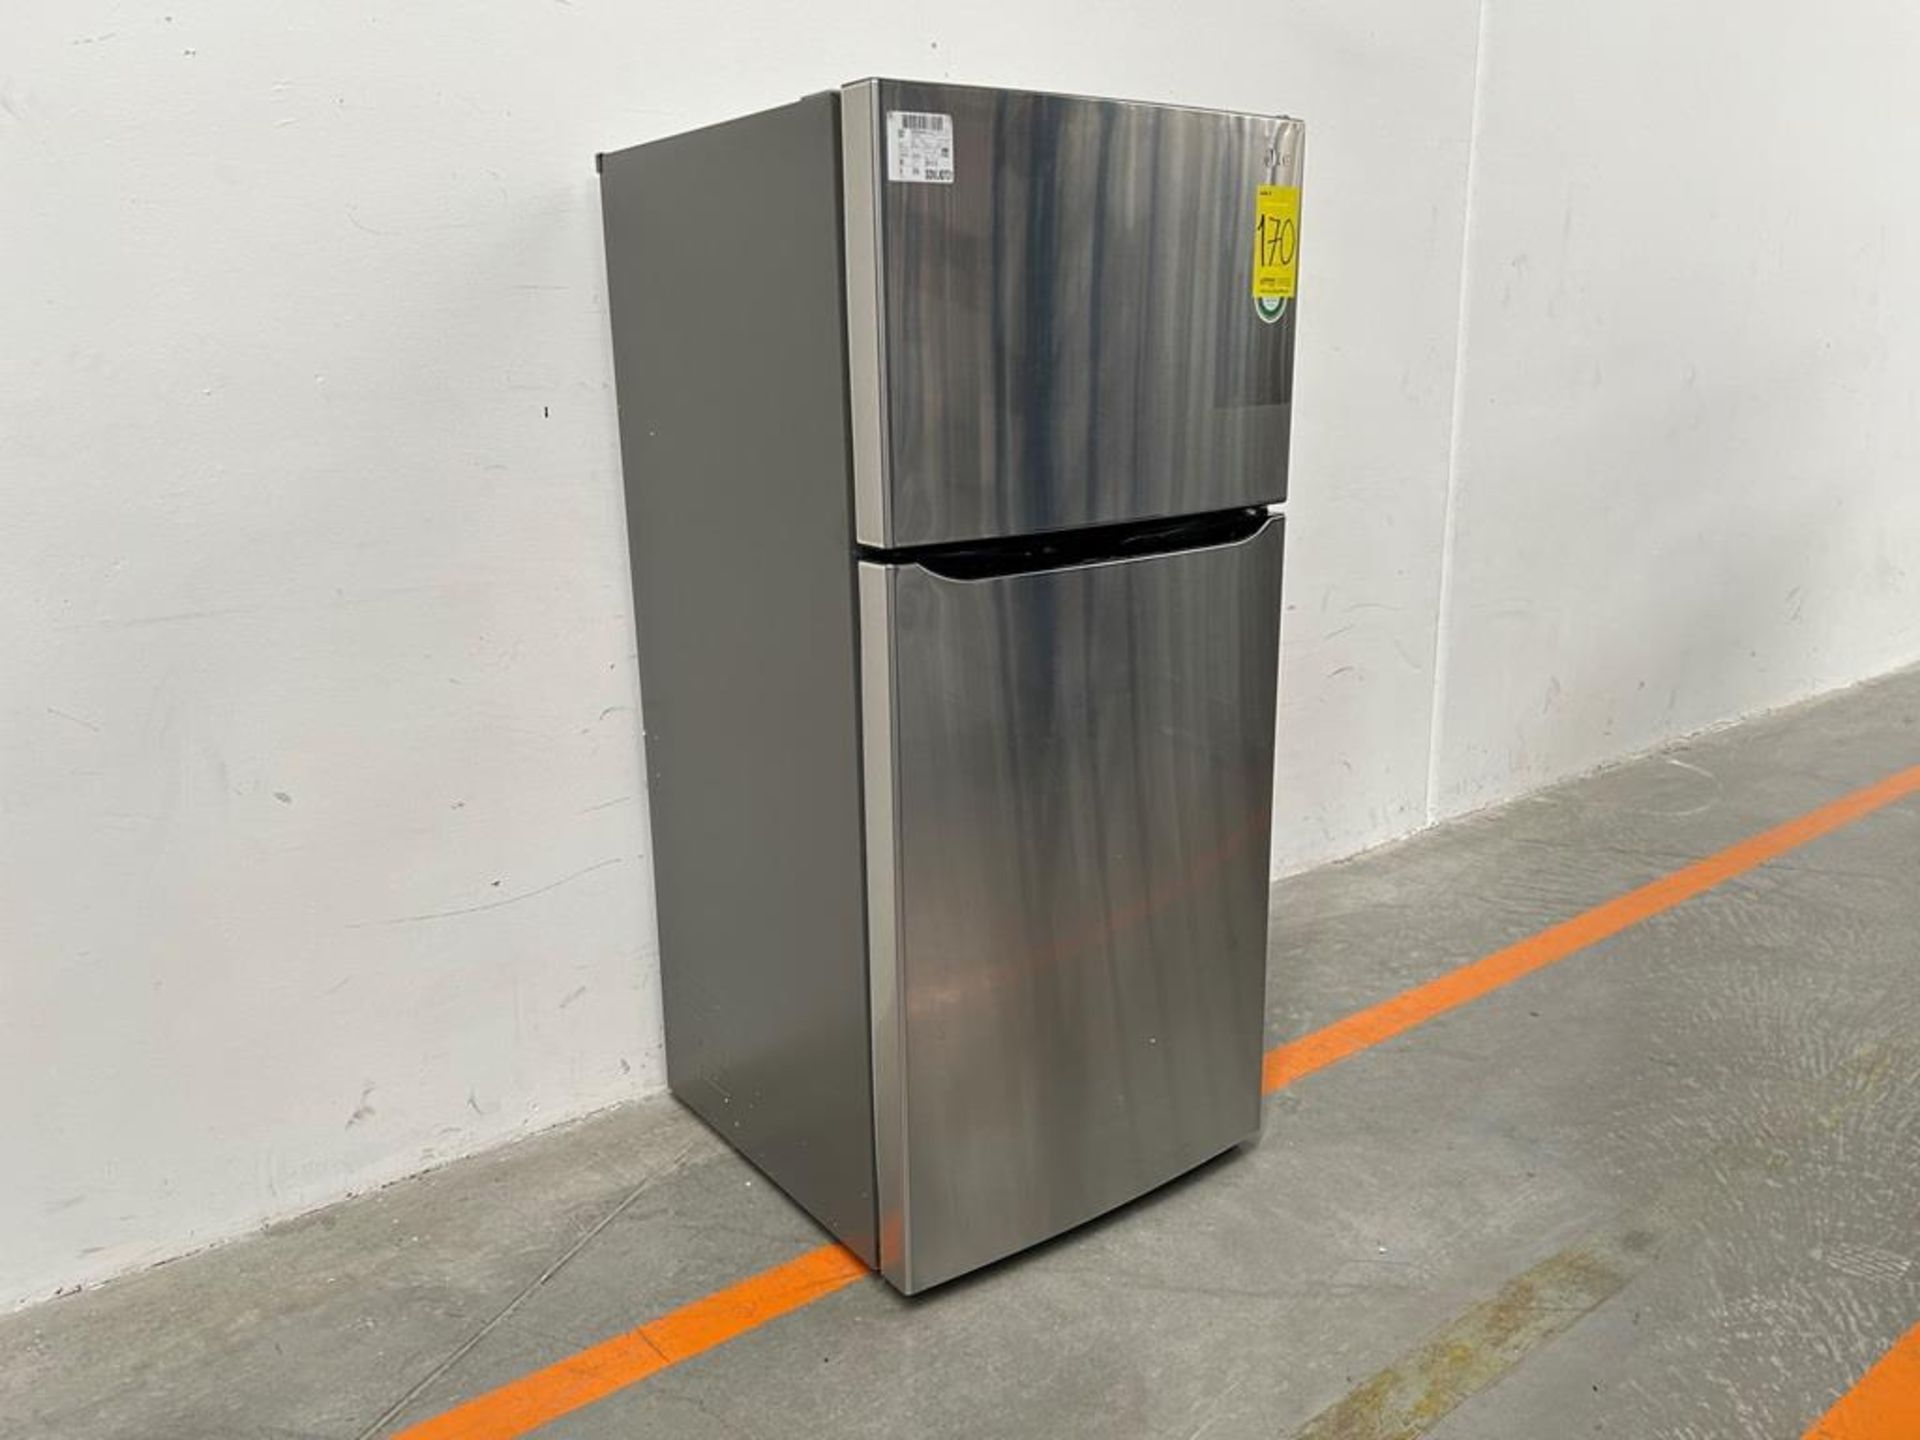 (NUEVO) Refrigerador Marca LG, Modelo LT57BPSX, Serie D1X339, Color GRIS - Image 3 of 11